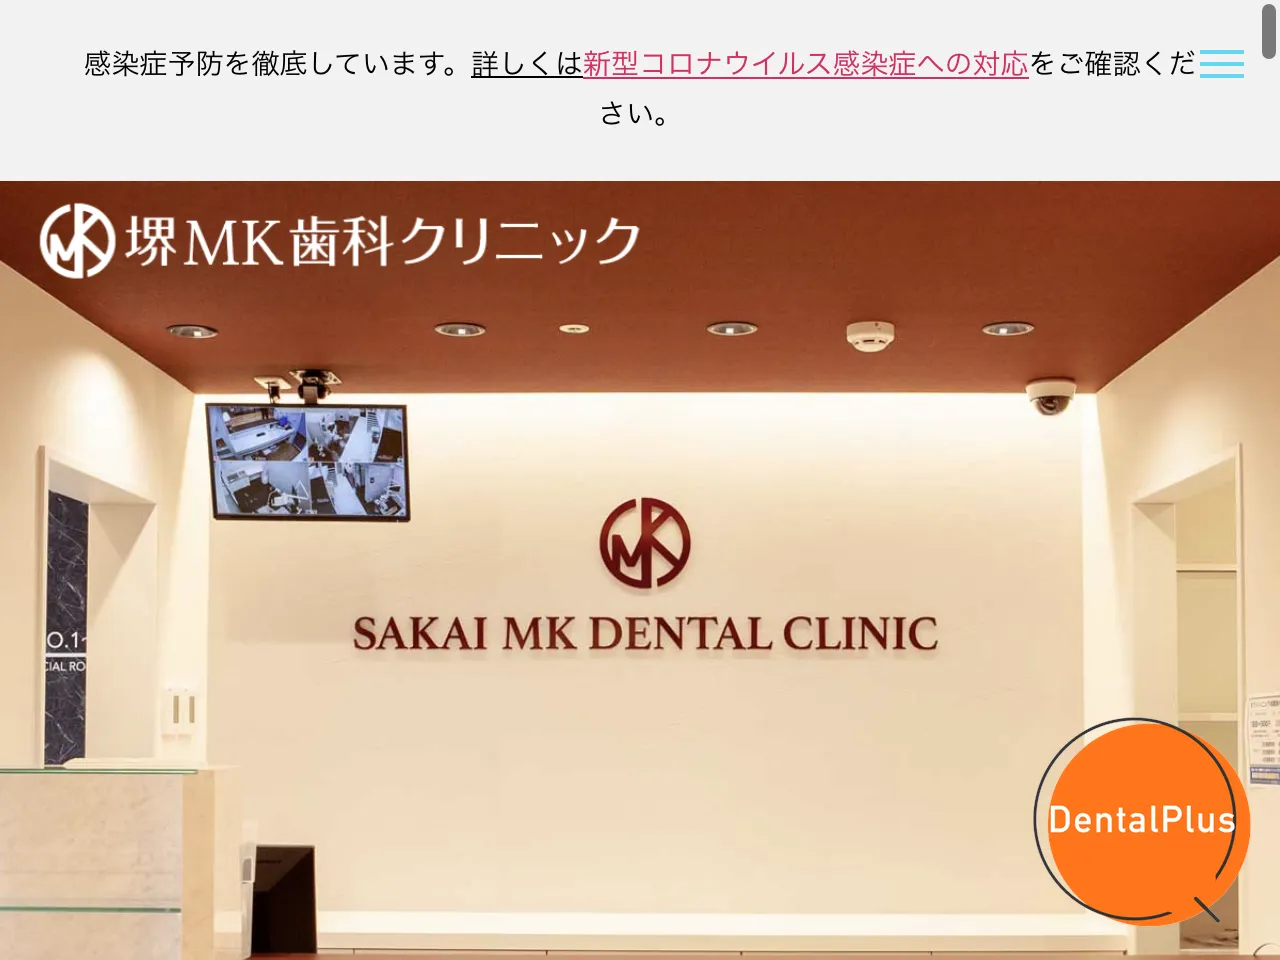 堺MK歯科クリニックのウェブサイト